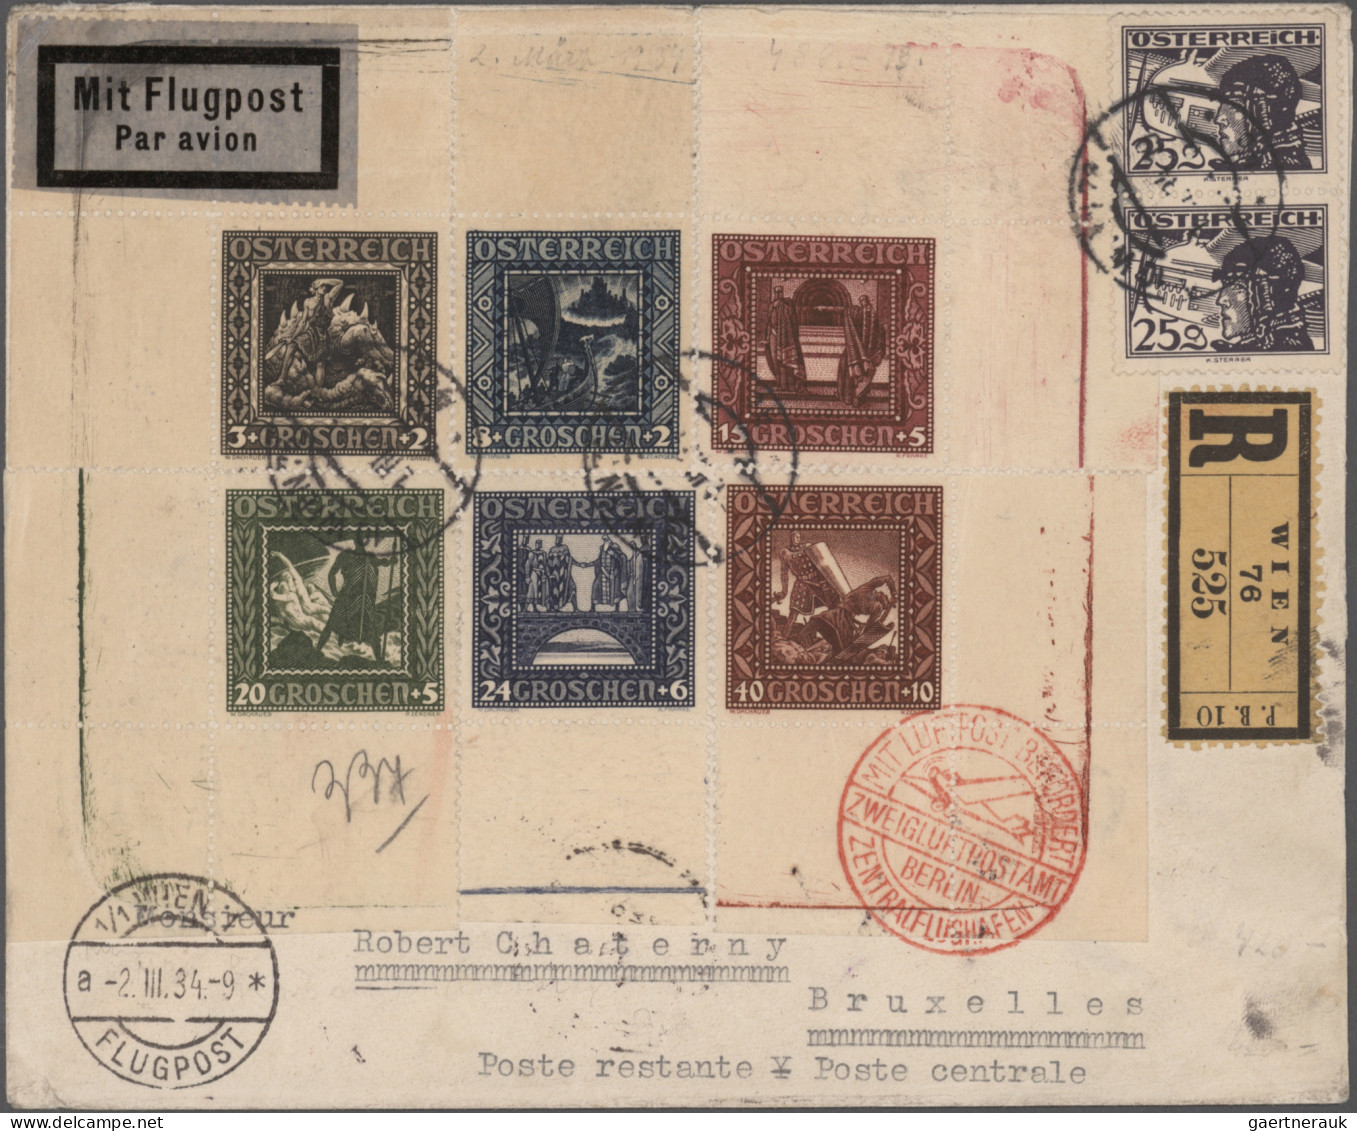 Österreich - Flugpost: 1922/1962, Sammlung von 41 Flugpostbelegen (rs. meist mit